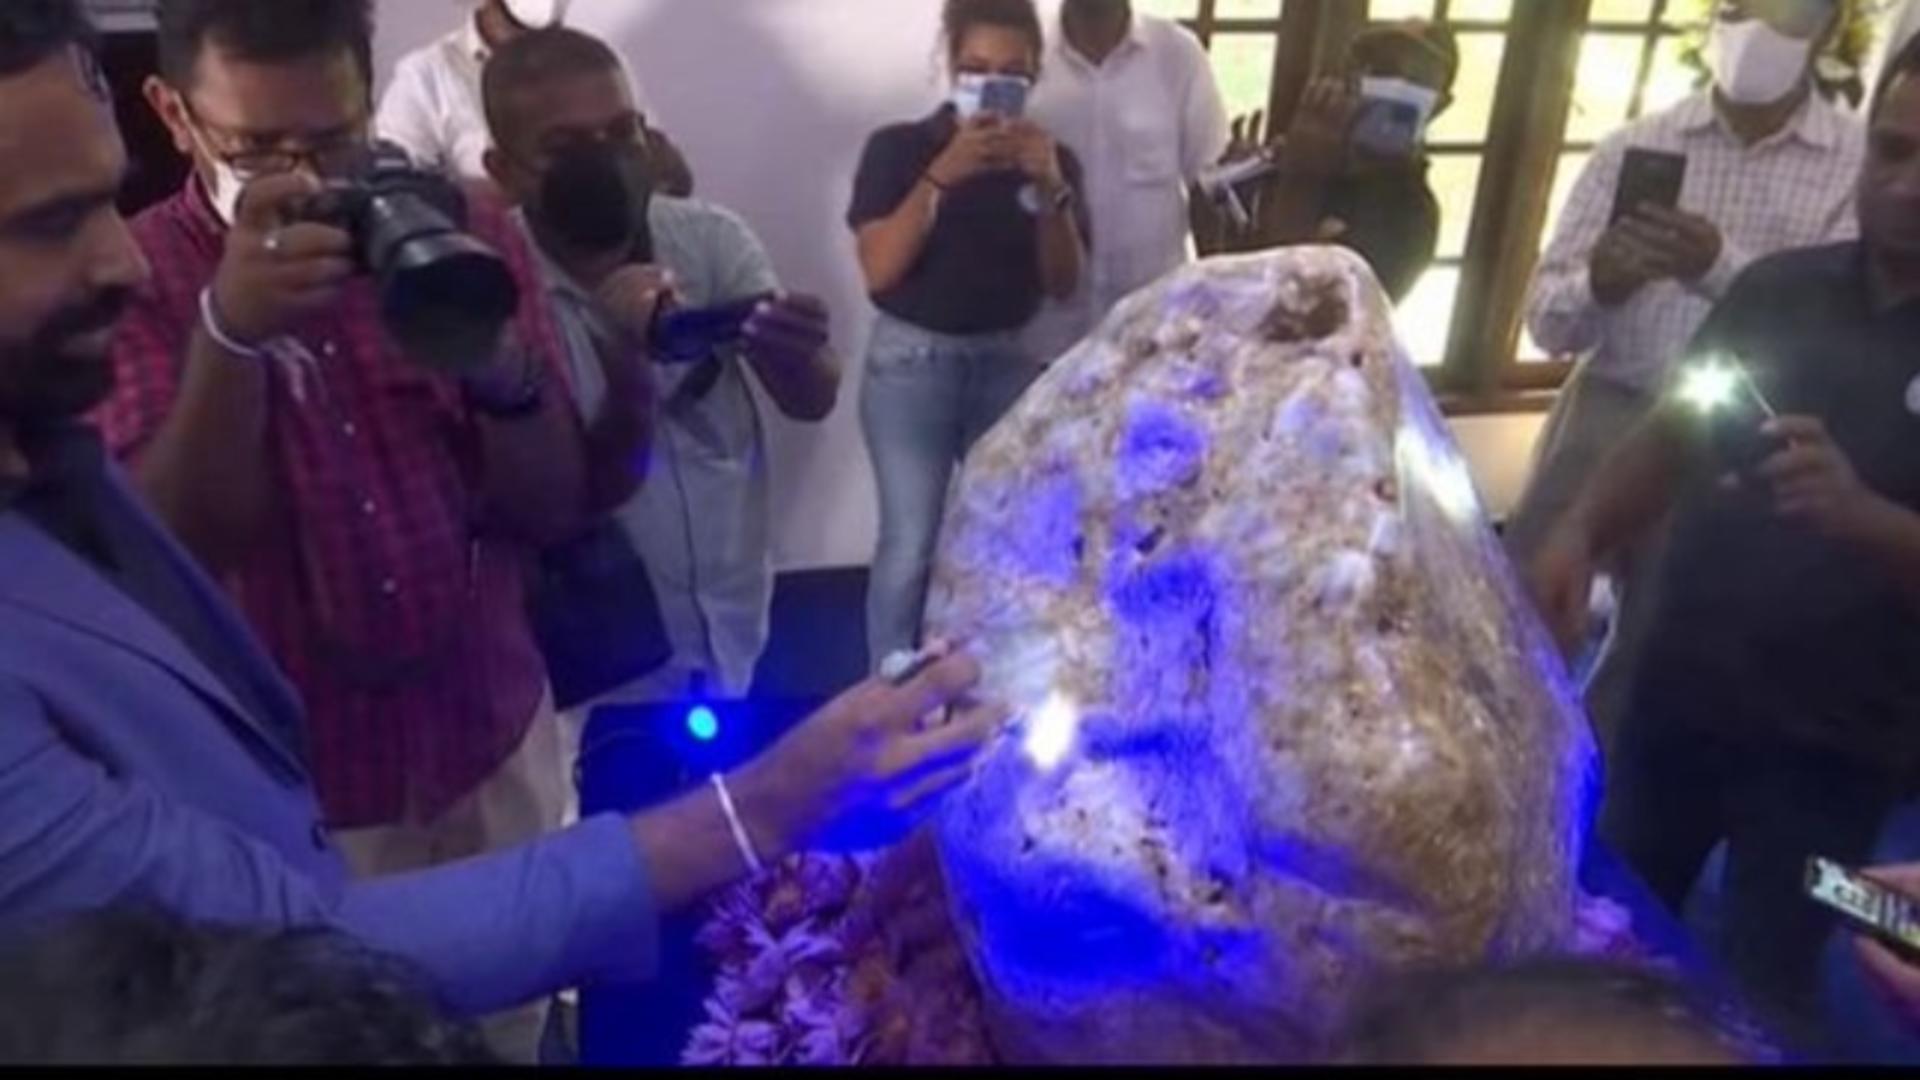 Cel mai mare safir din lume - descoperit în Sri Lanka Foto: Twitter.com